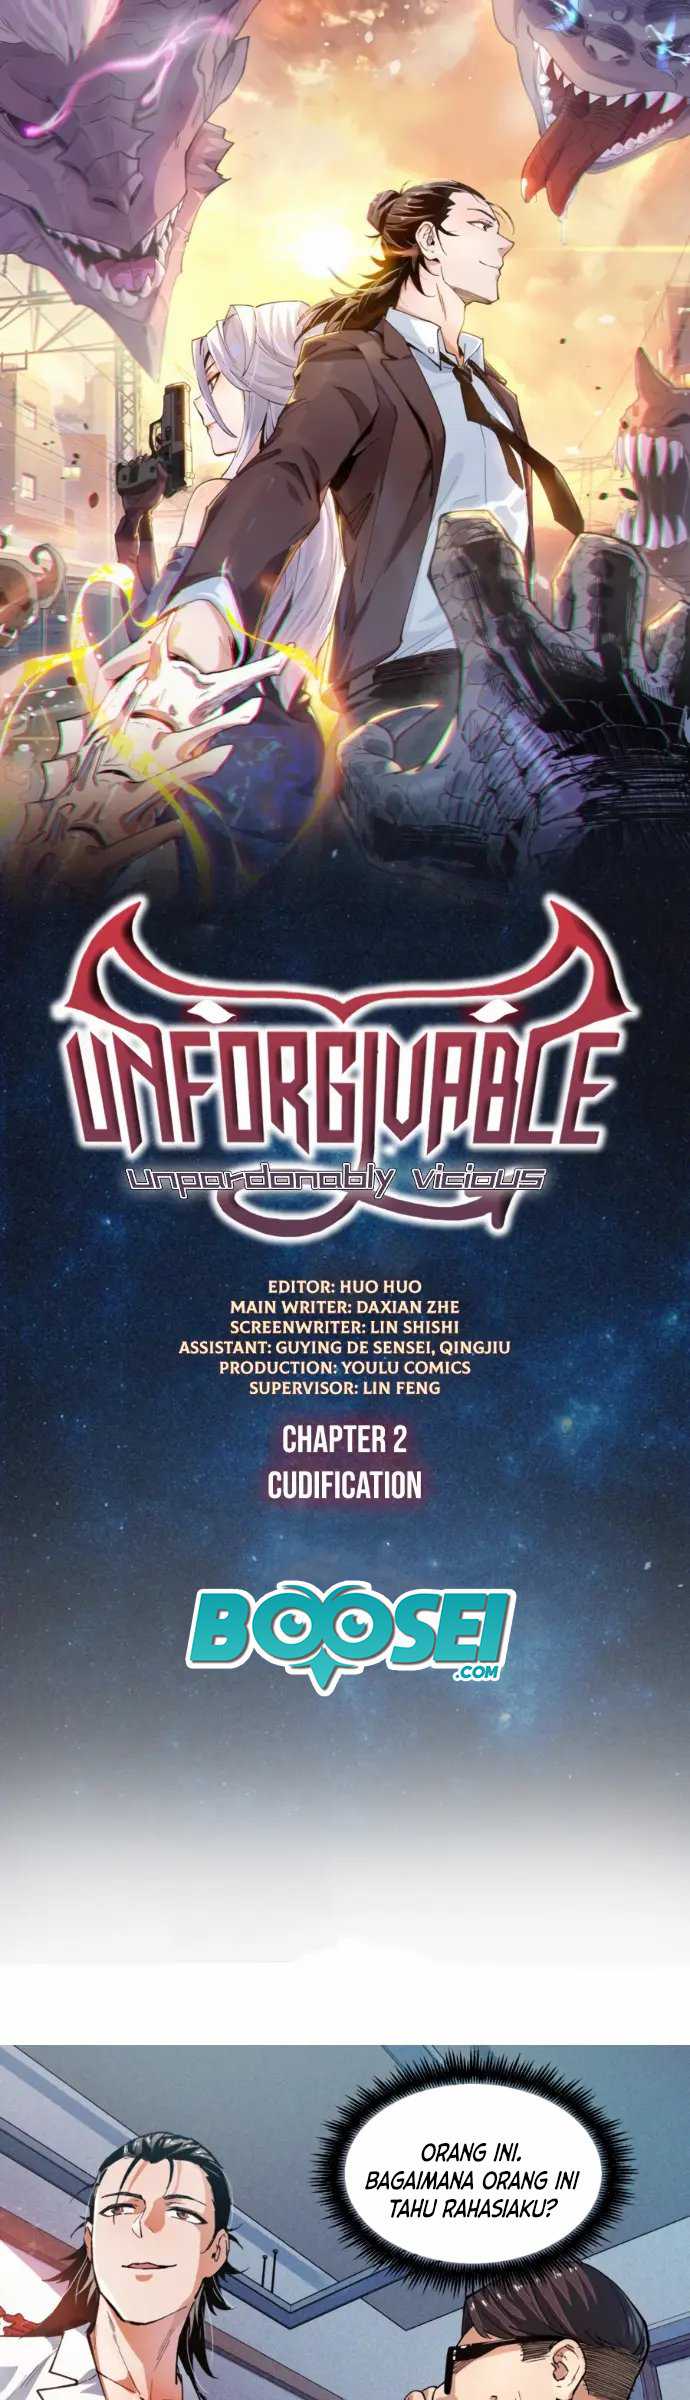 UNFORGIVABLE! Unpardonably Vicious! Chapter 02